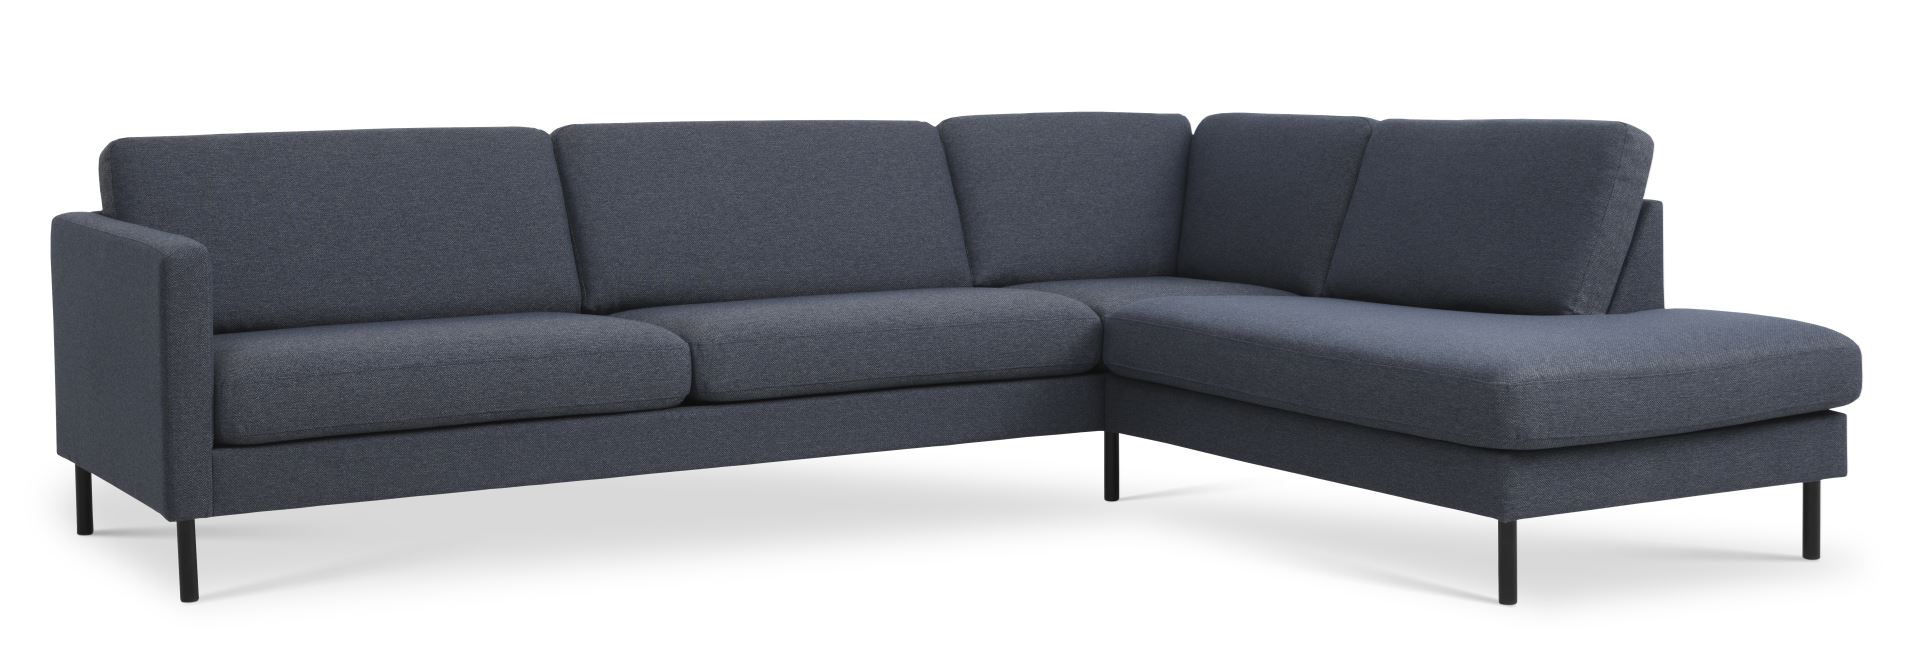 Ask sæt 61 stor OE sofa, m. højre chaiselong - navy blåt polyester stof og sort metal